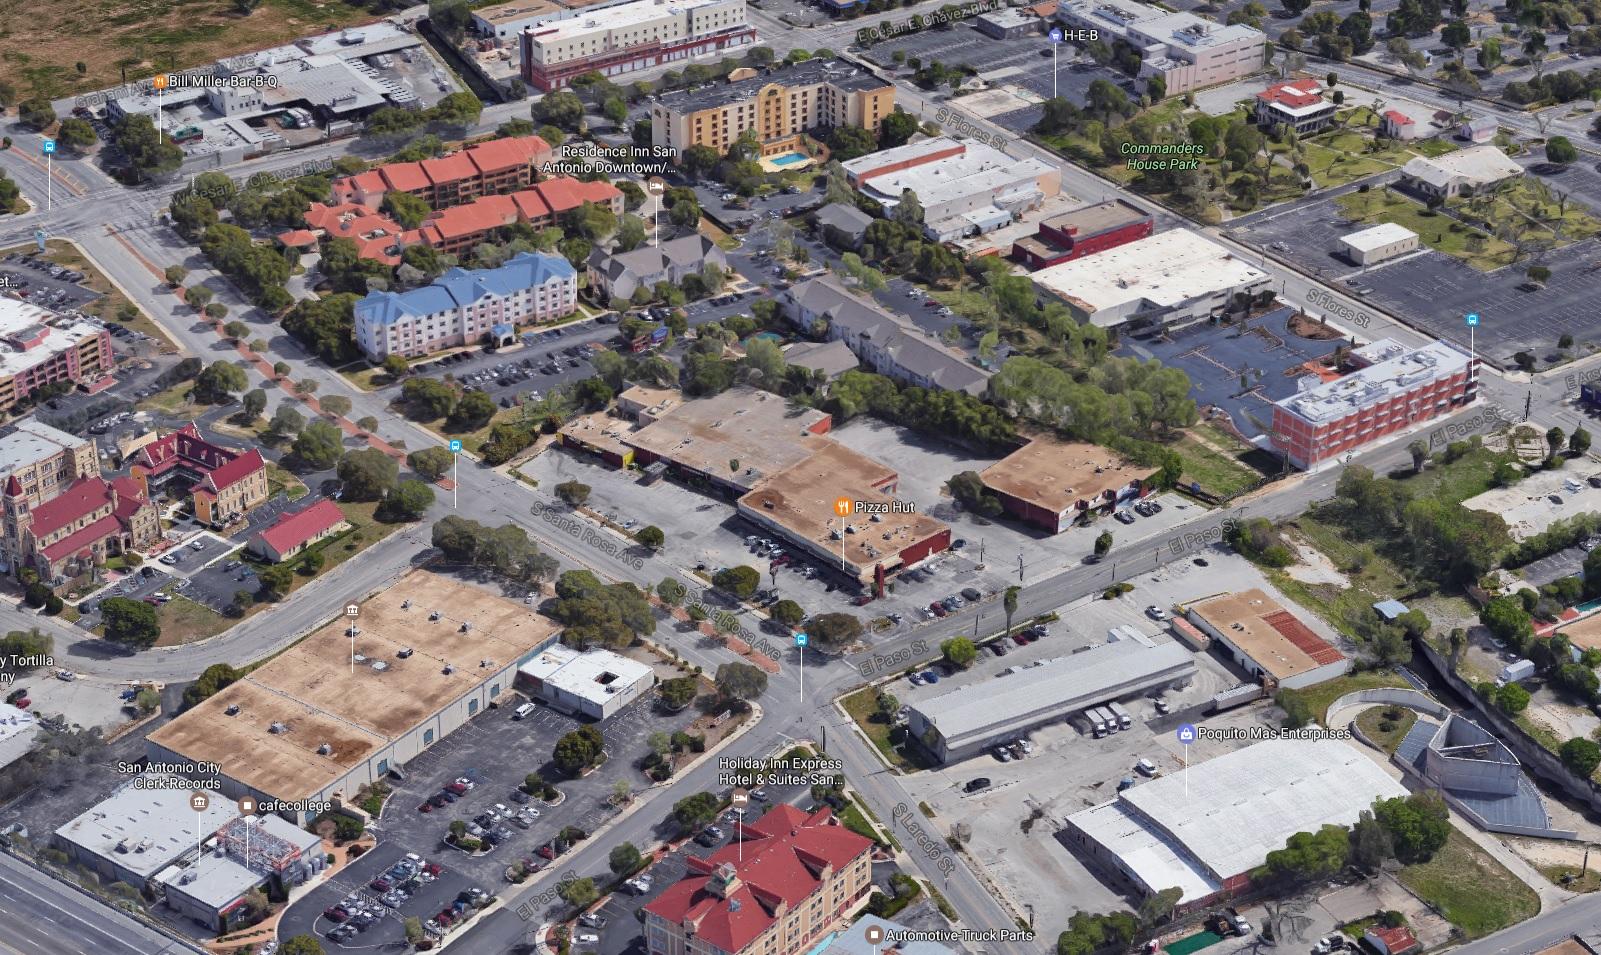 Hixon affiliate buys shopping center in Southtown - San Antonio Express-News